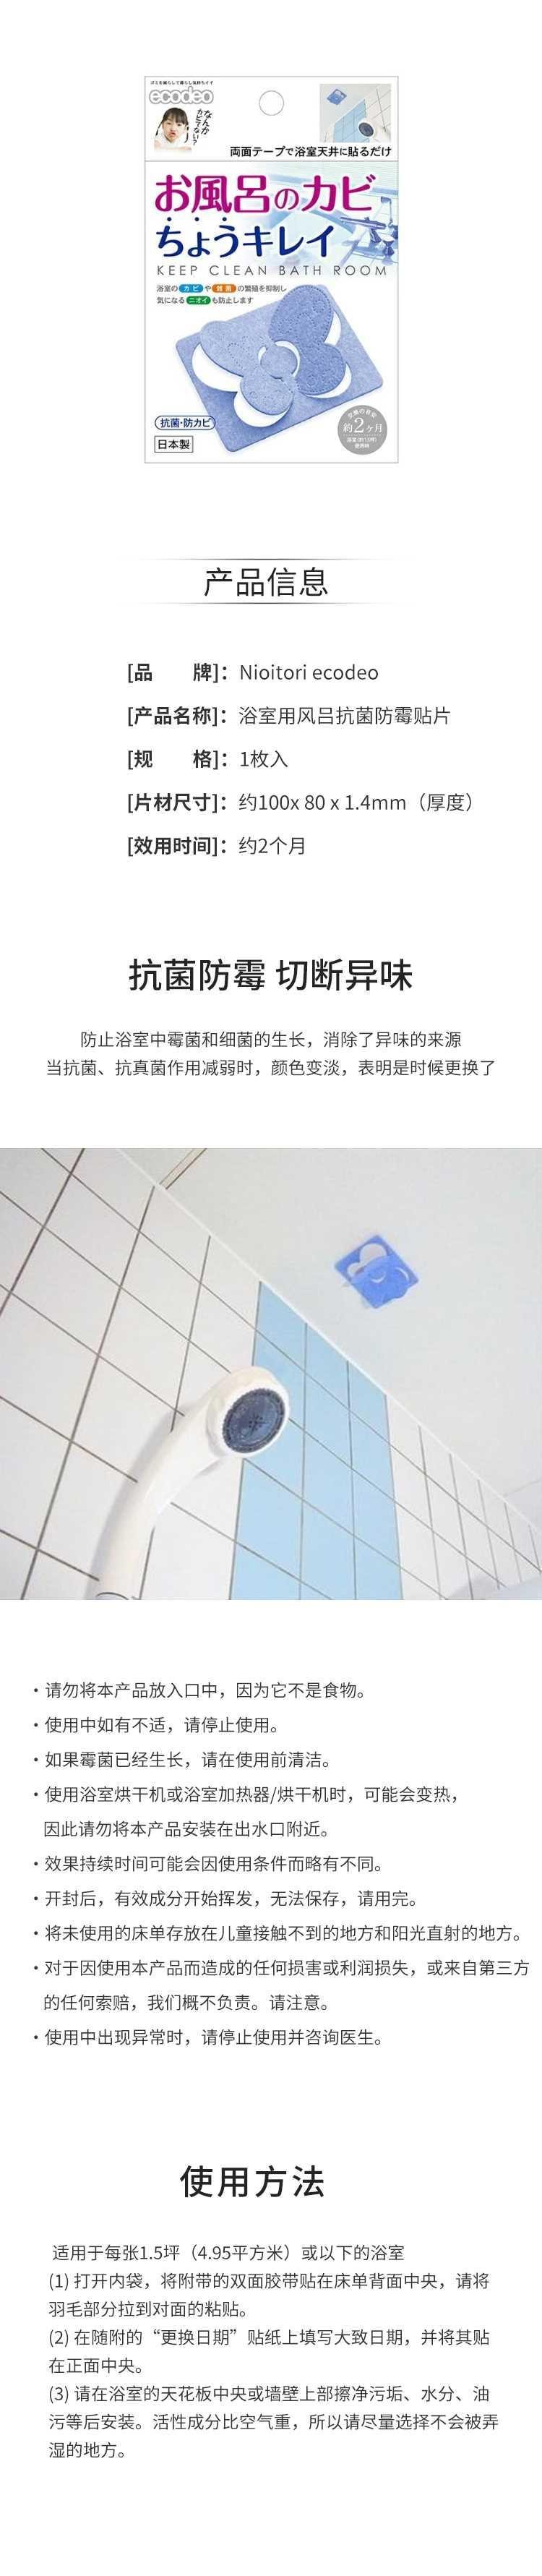 【日本直邮】TAIYO 太洋 Nioitori ecodeo 浴室用风吕抗菌防霉贴片 1枚入